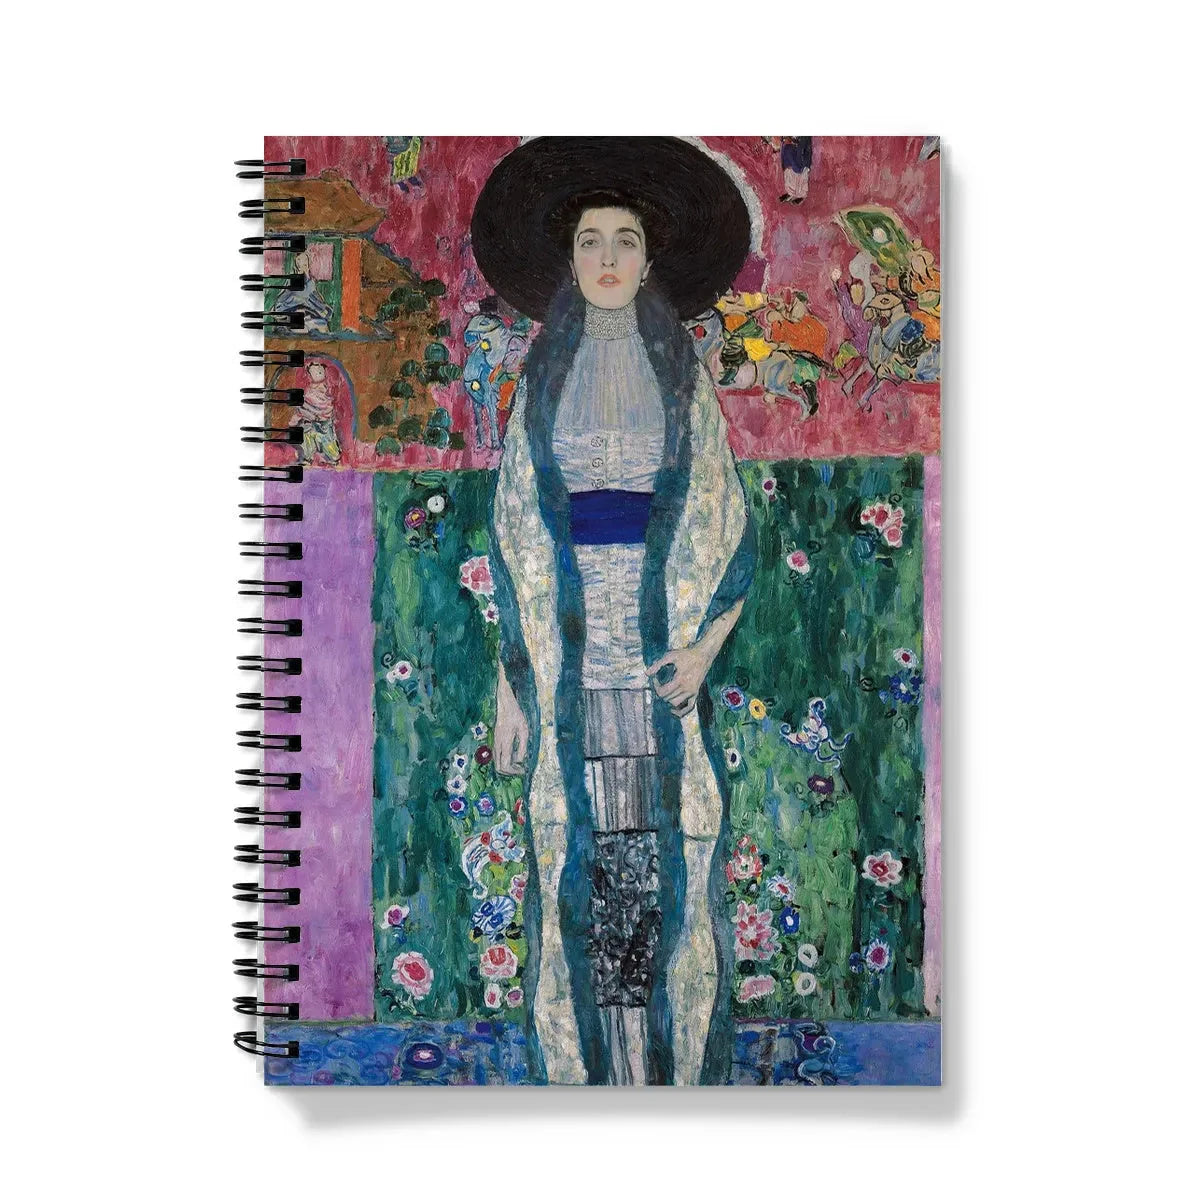 Adele Bloch - bauer By Gustav Klimt Notebook - A5 - Graph Paper - Notebooks & Notepads - Aesthetic Art